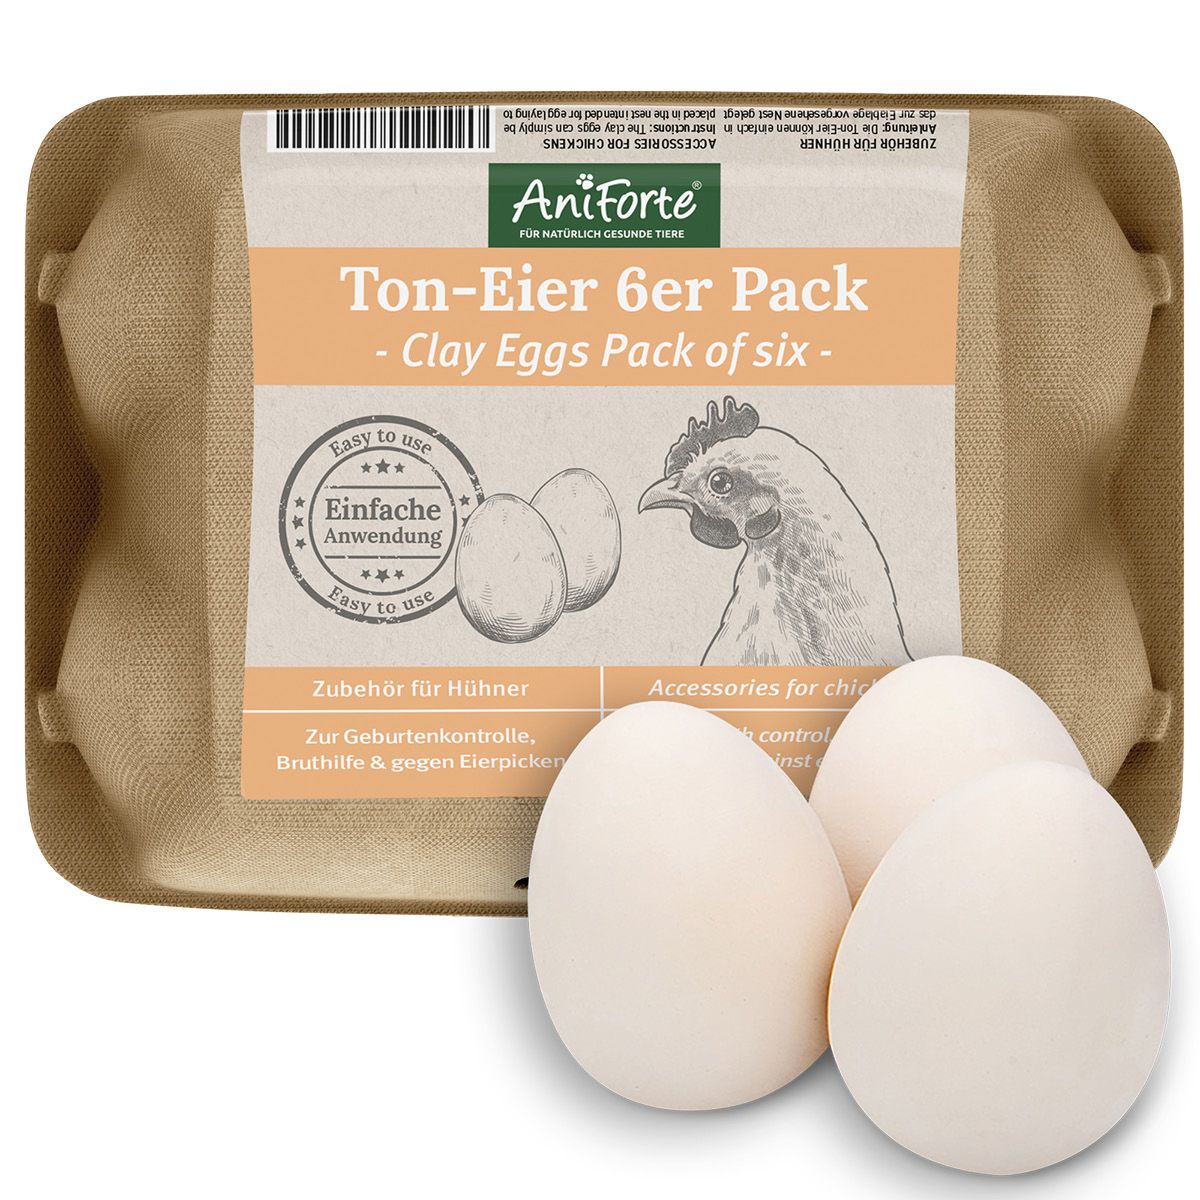 AniForte Ton-Eier 6er Pack